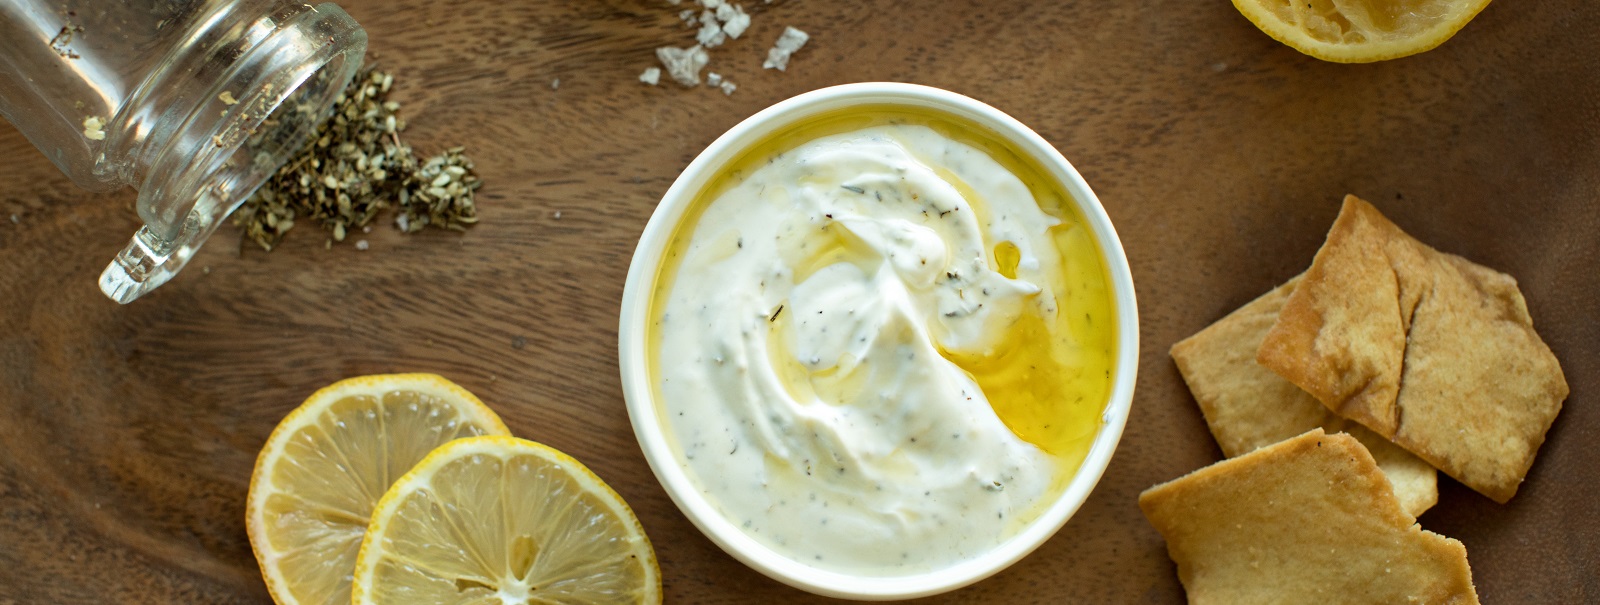 Lemon Za'atar Yogurt Dip Recipe